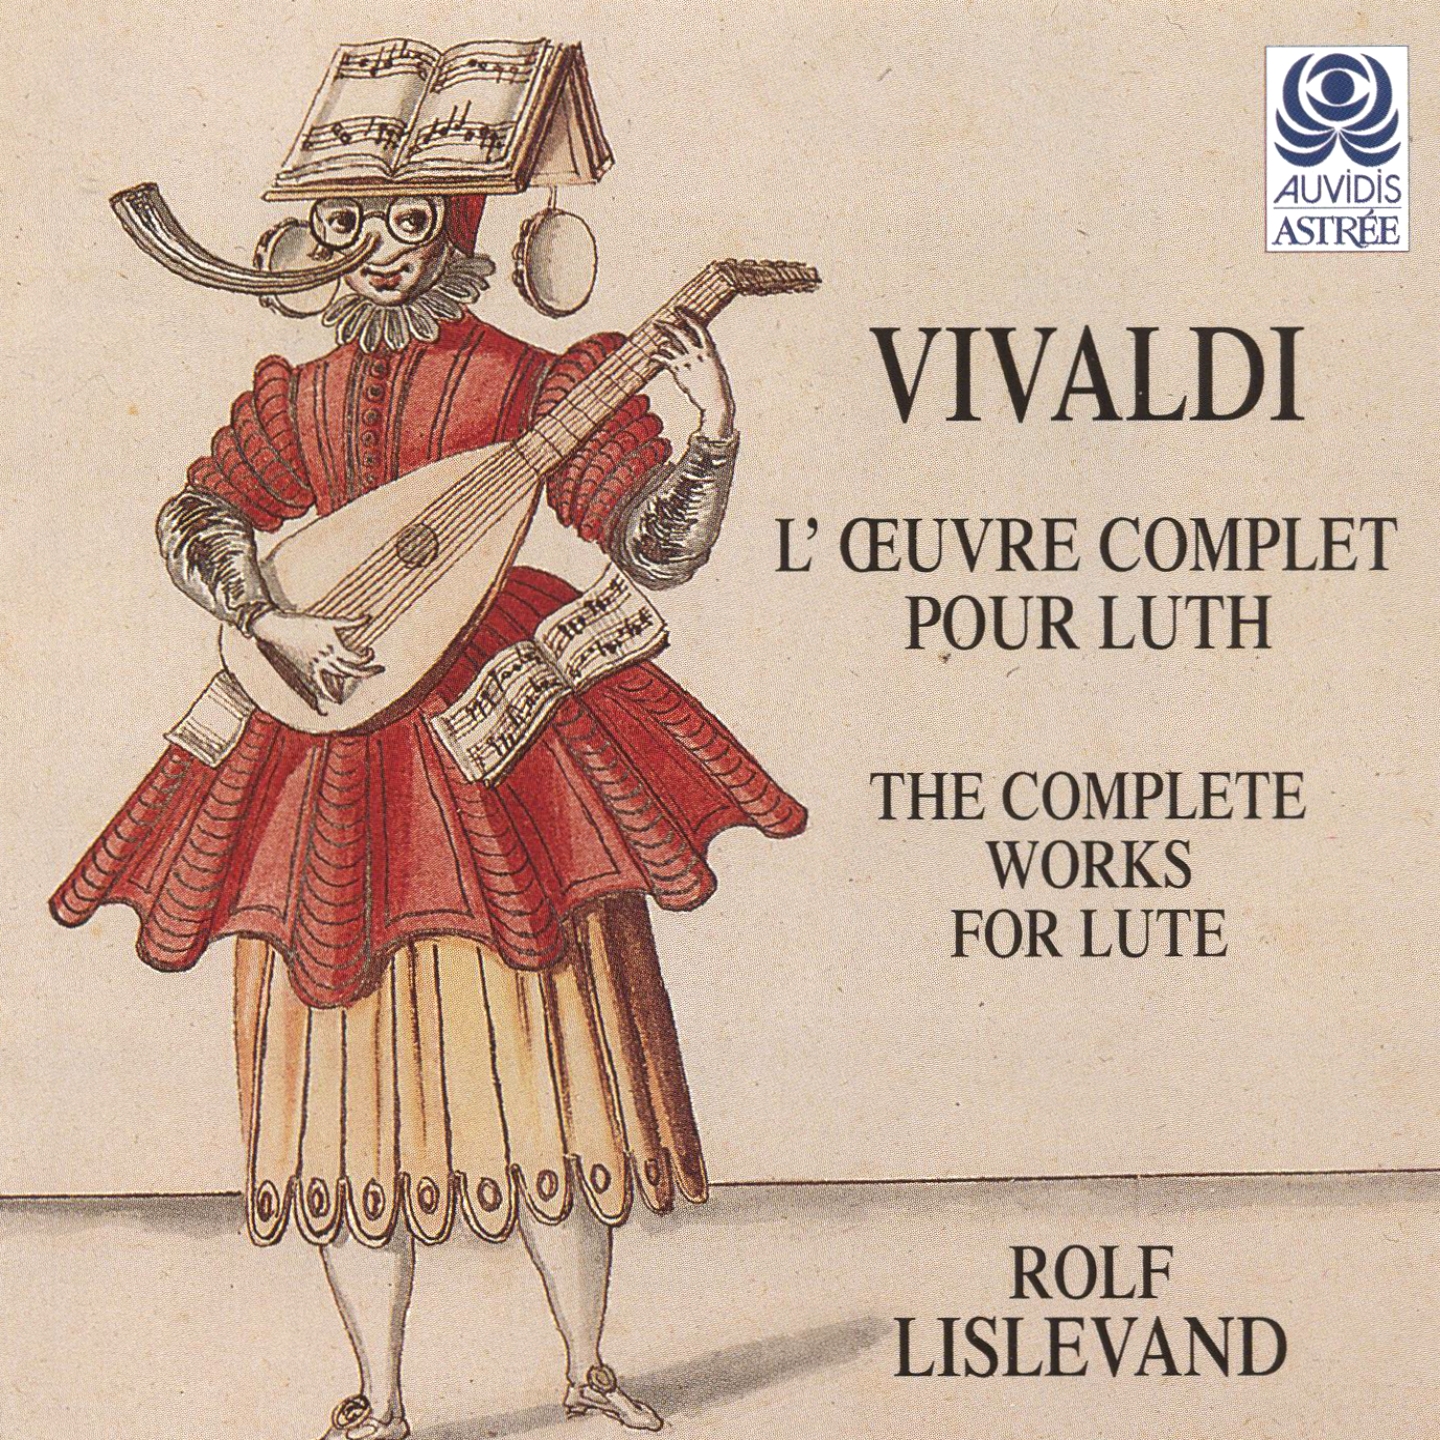 Vivaldi: L' uvre comple te pour luth